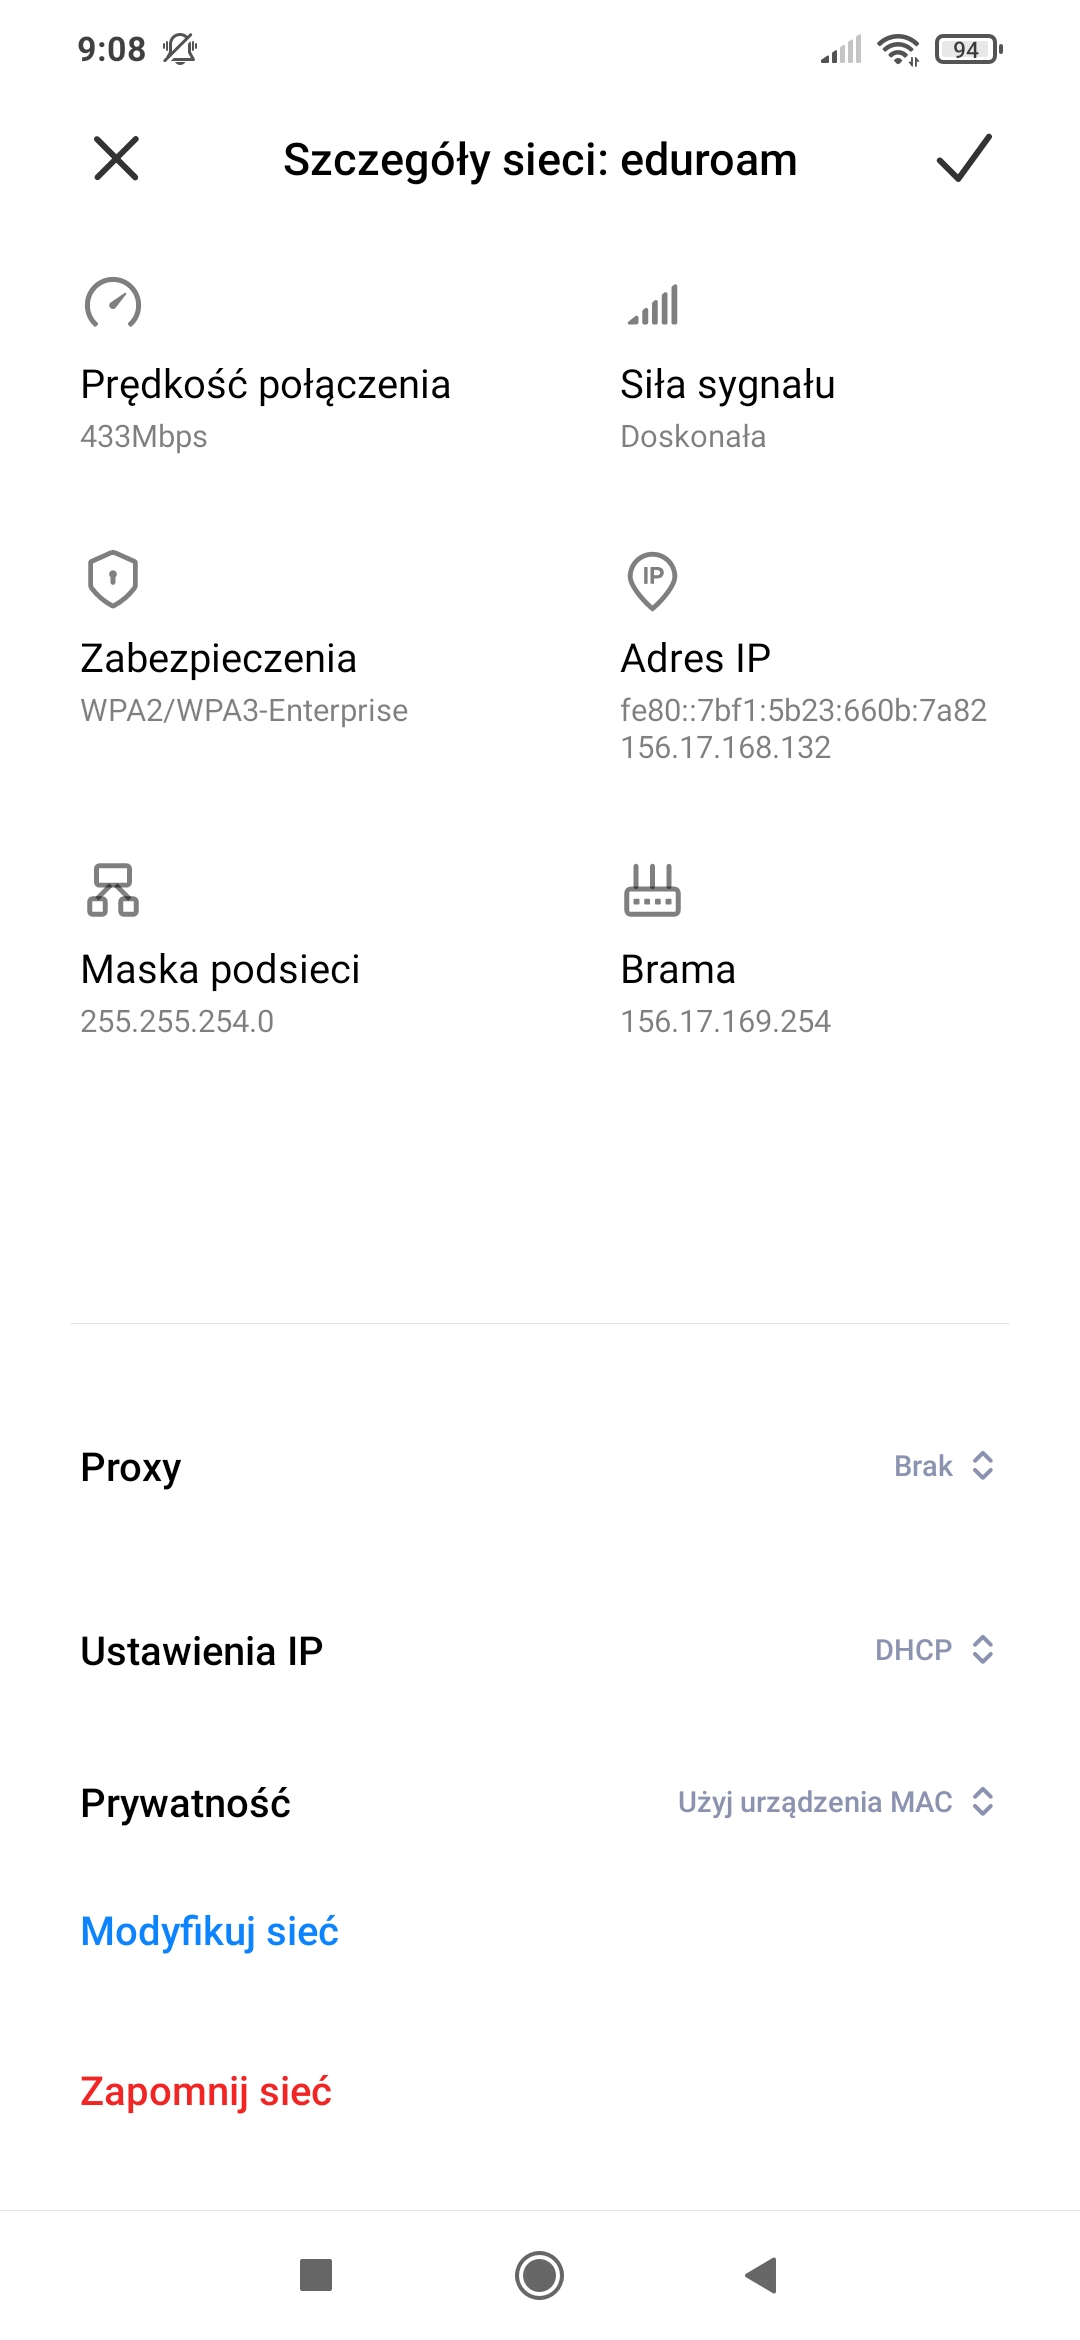 Eduroam-android-new02.jpg